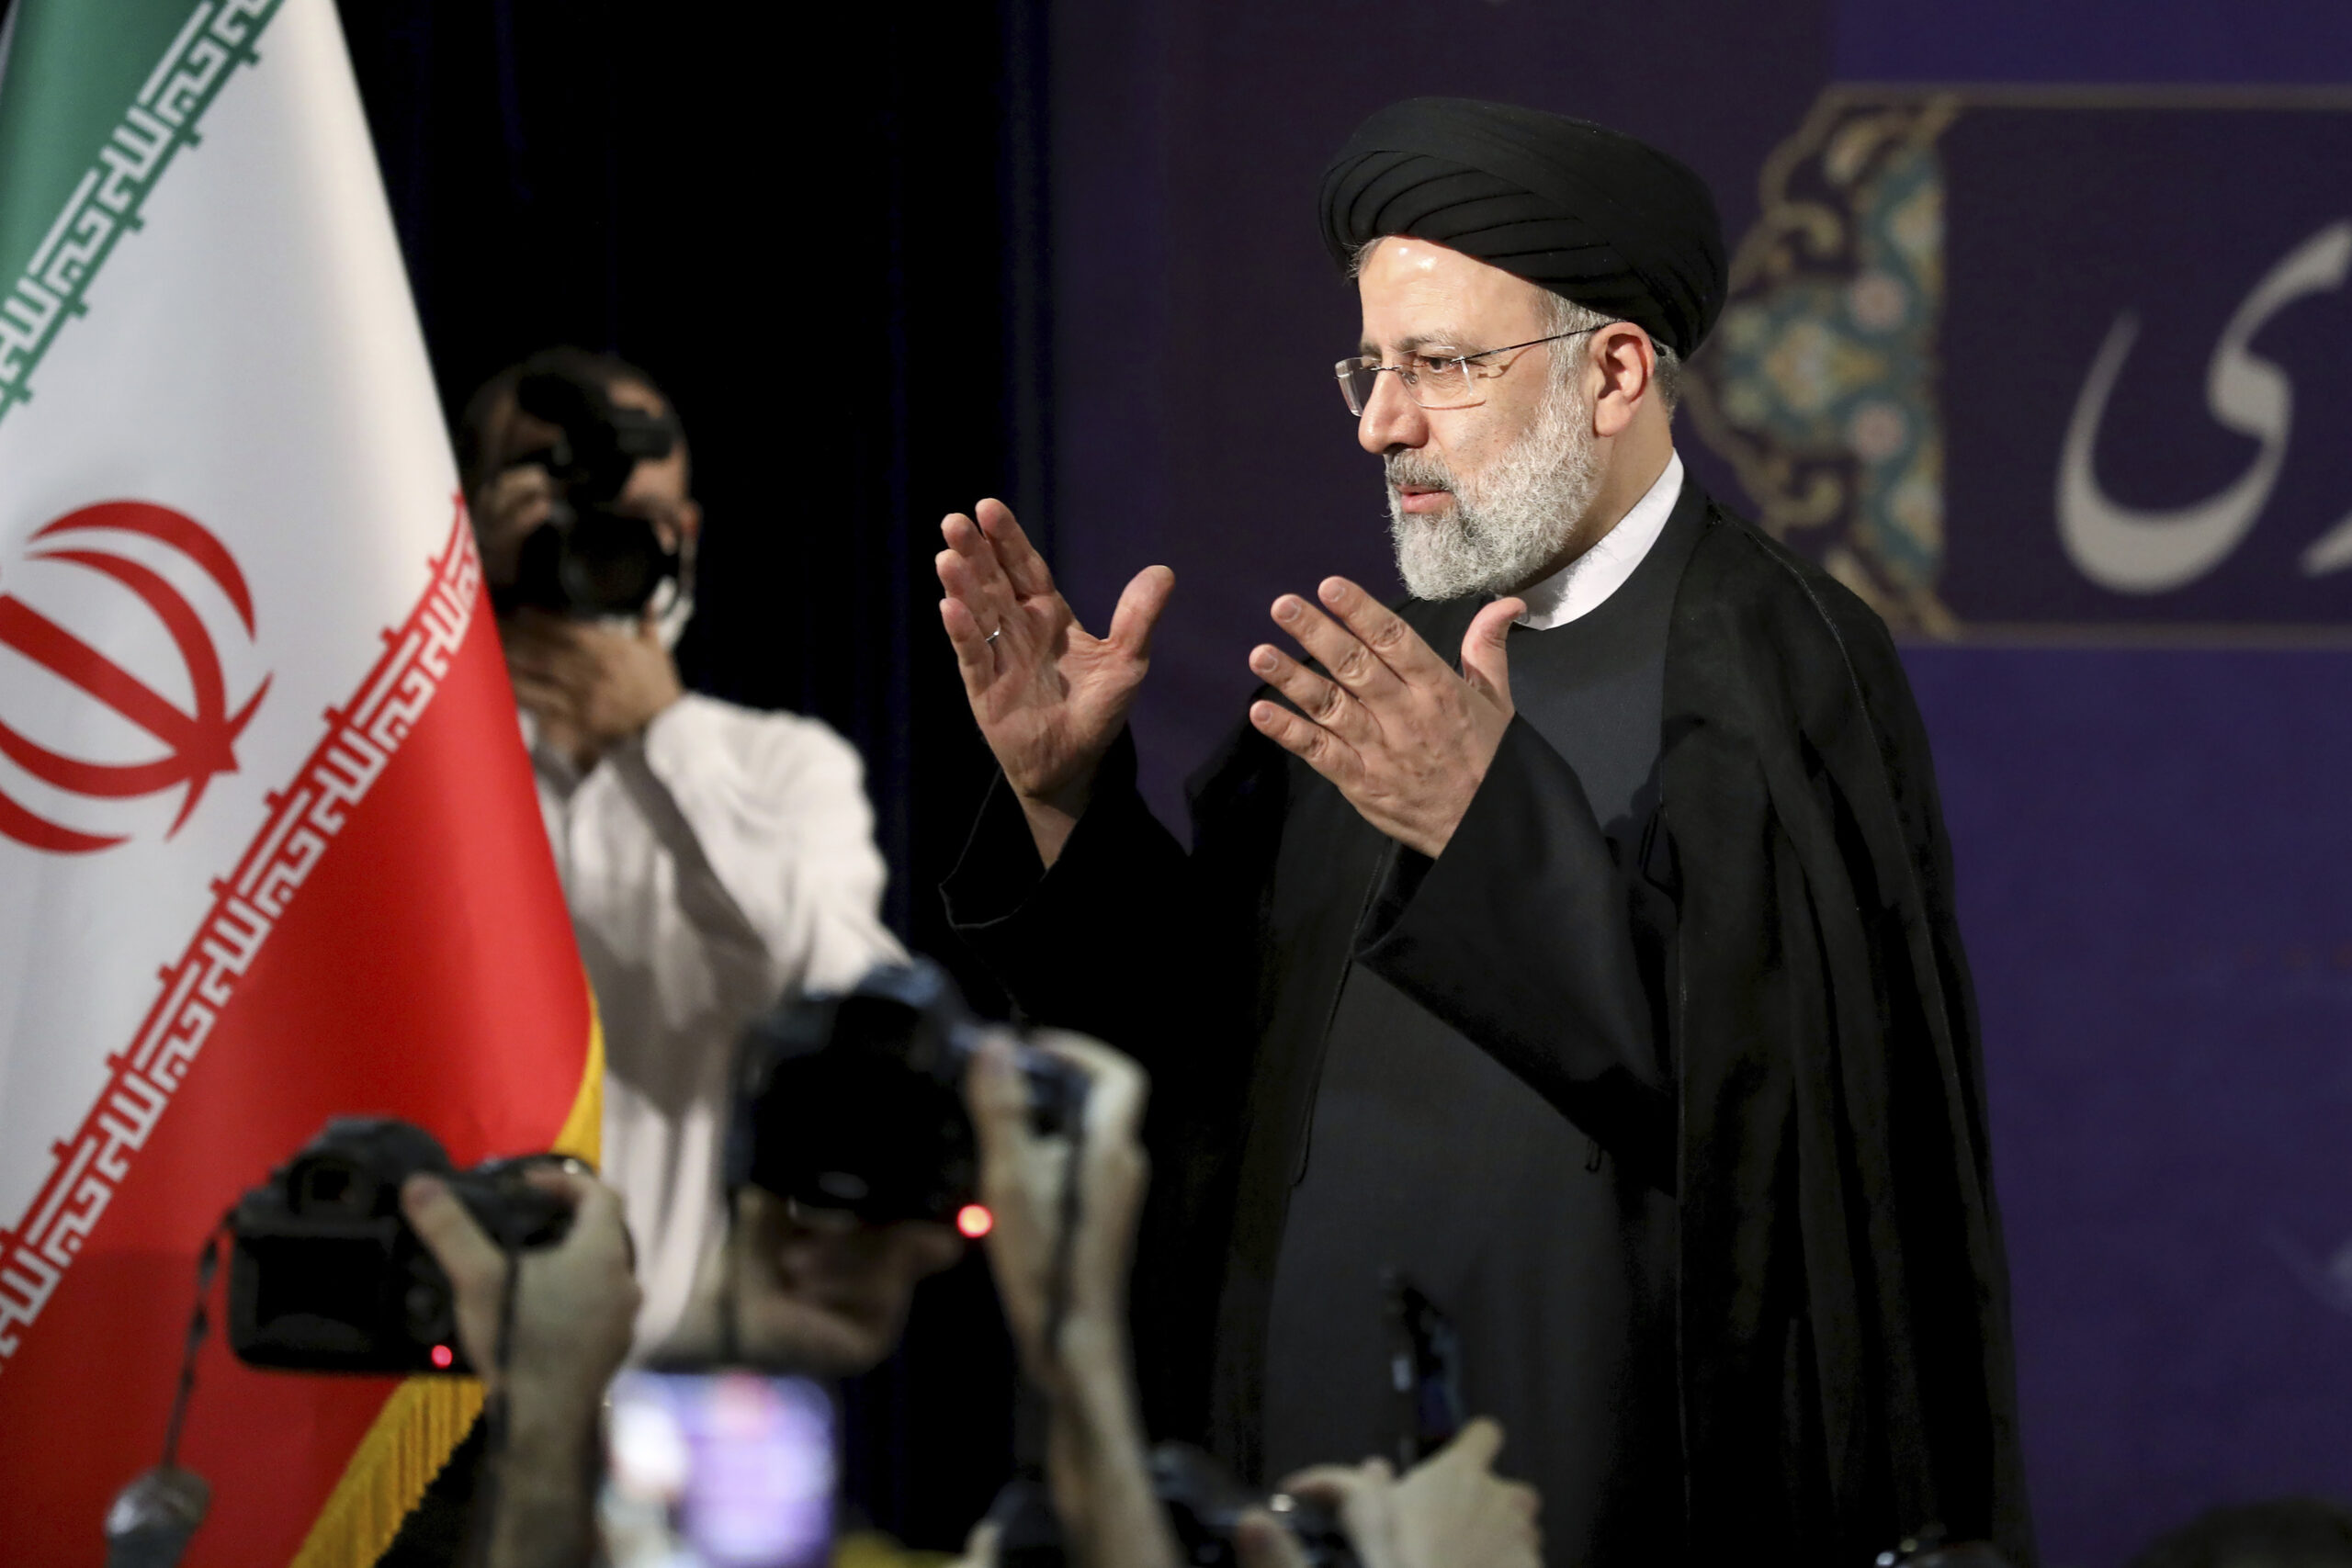 El veto a los candidatos moderados elimina la rivalidad en las elecciones presidenciales de Irán